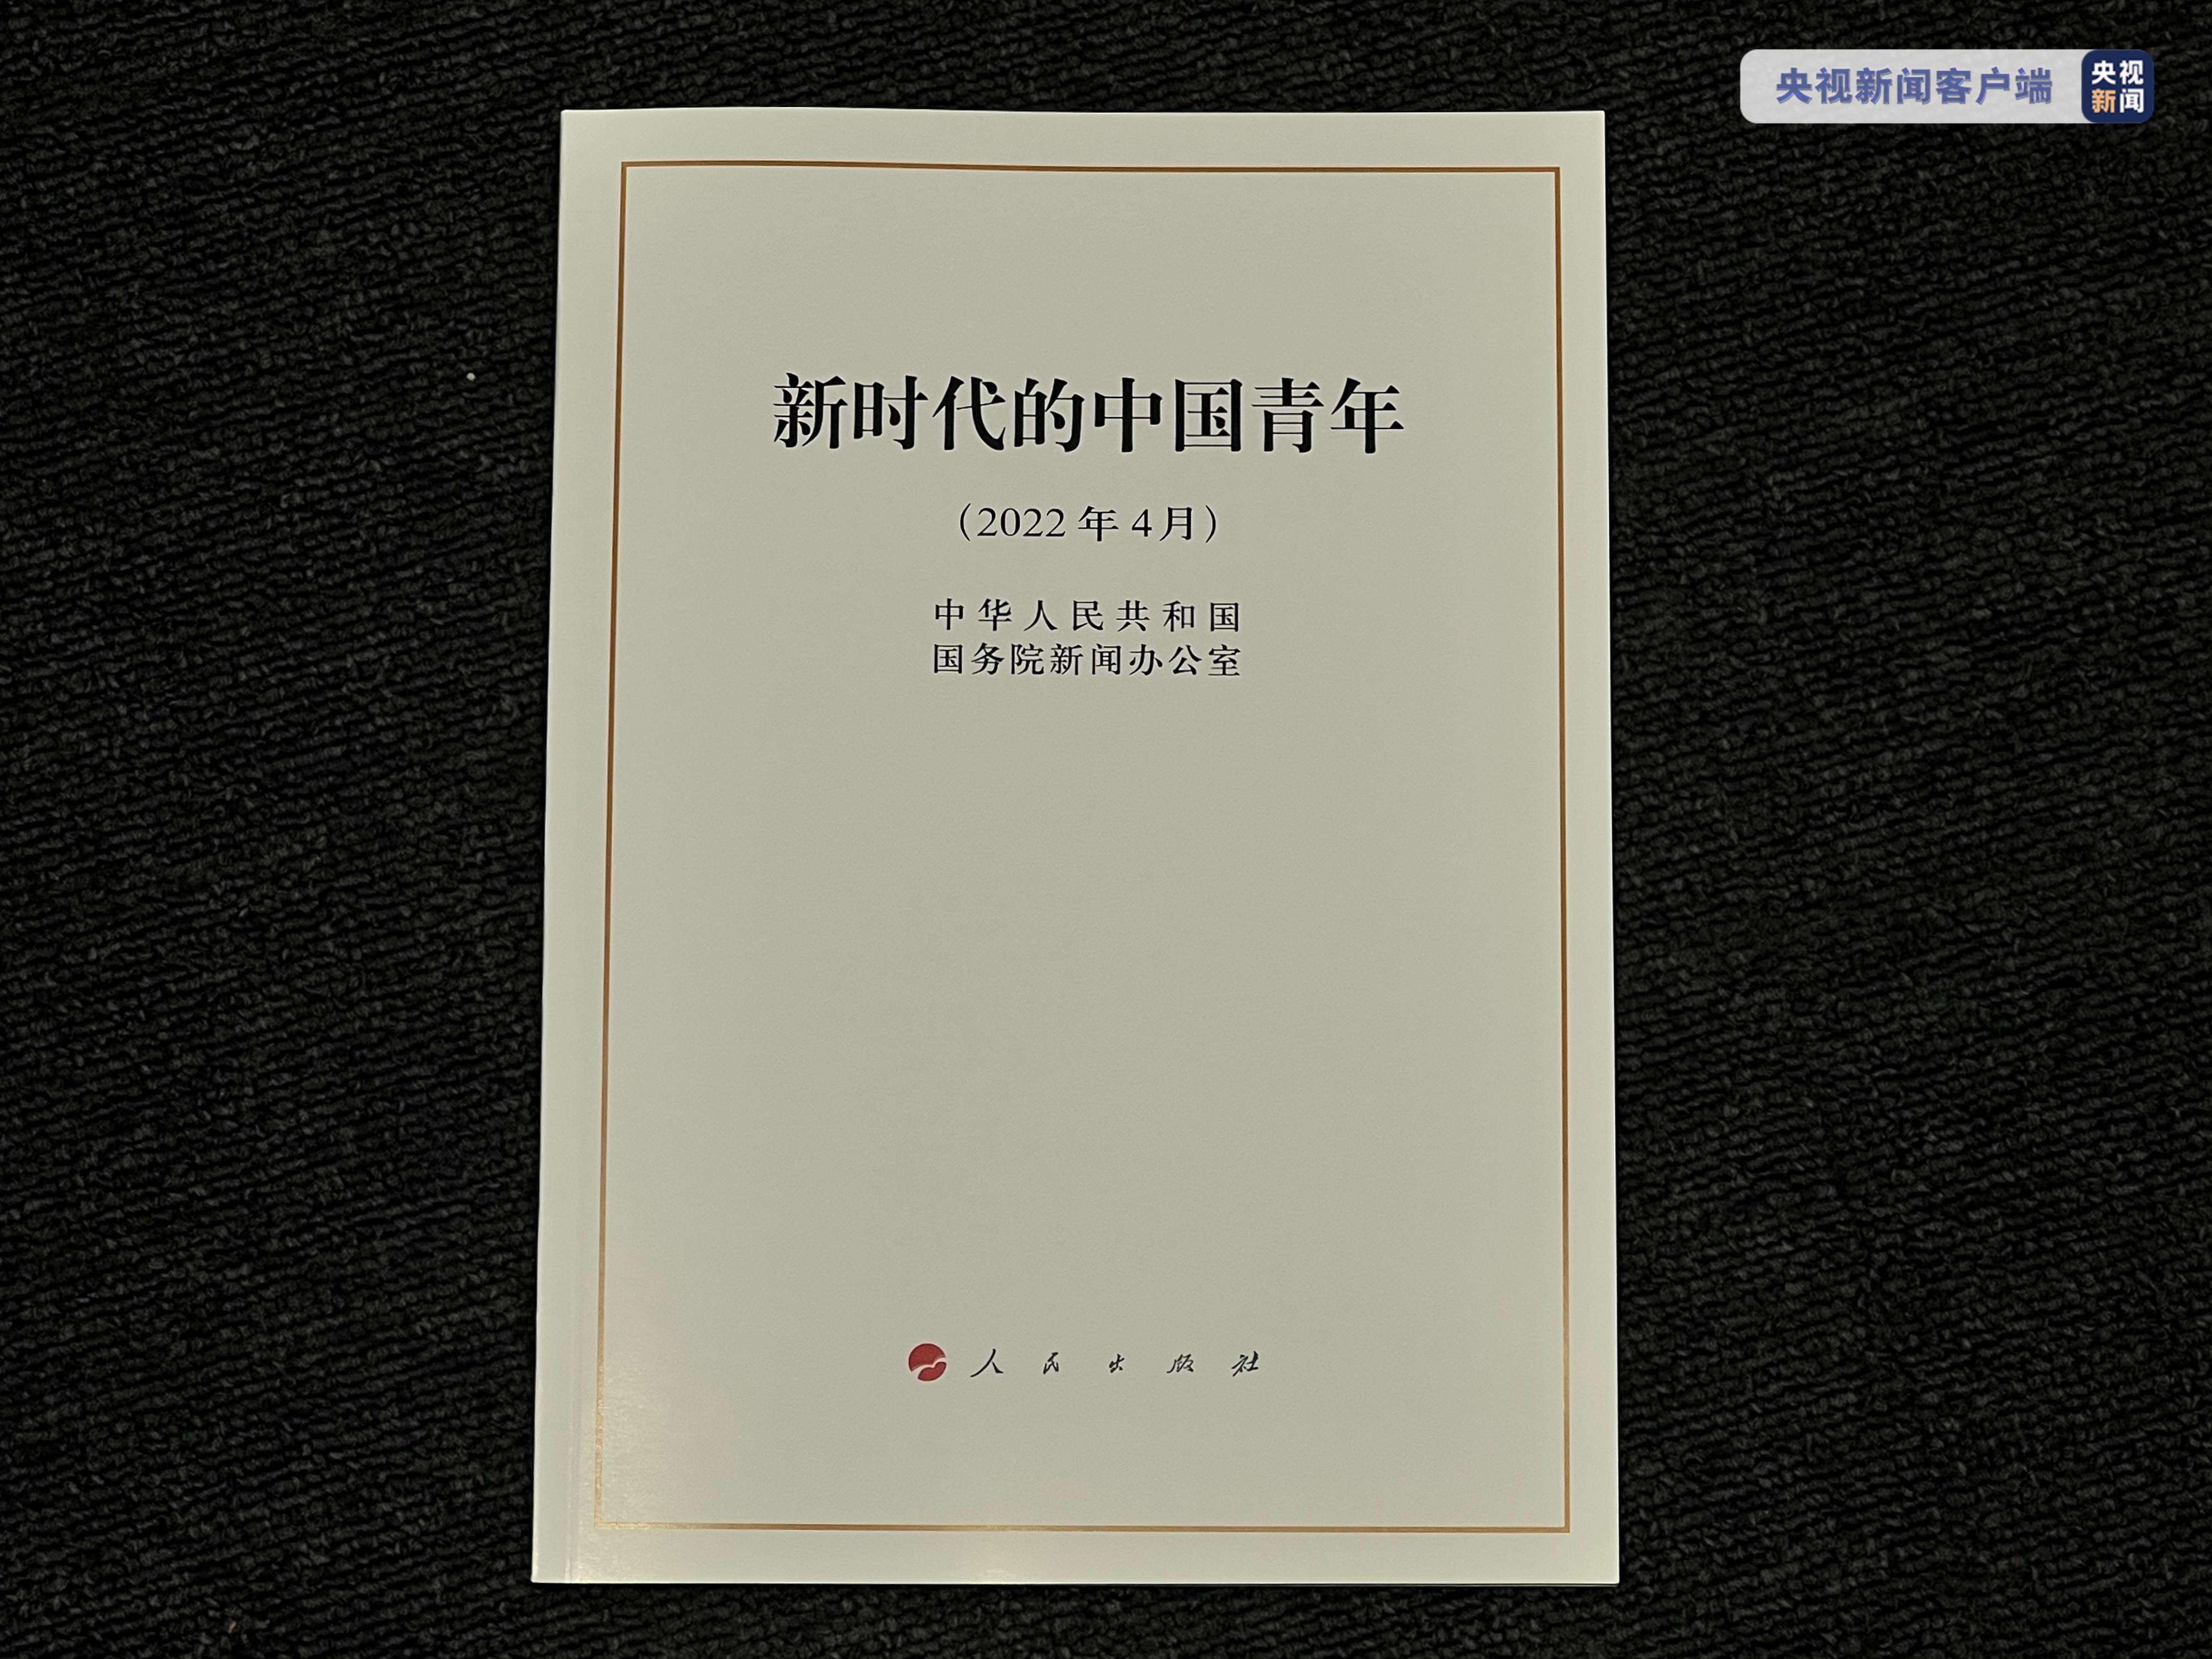 新中国历史上第一部关于青年的白皮书《新时代的中国青年》发布